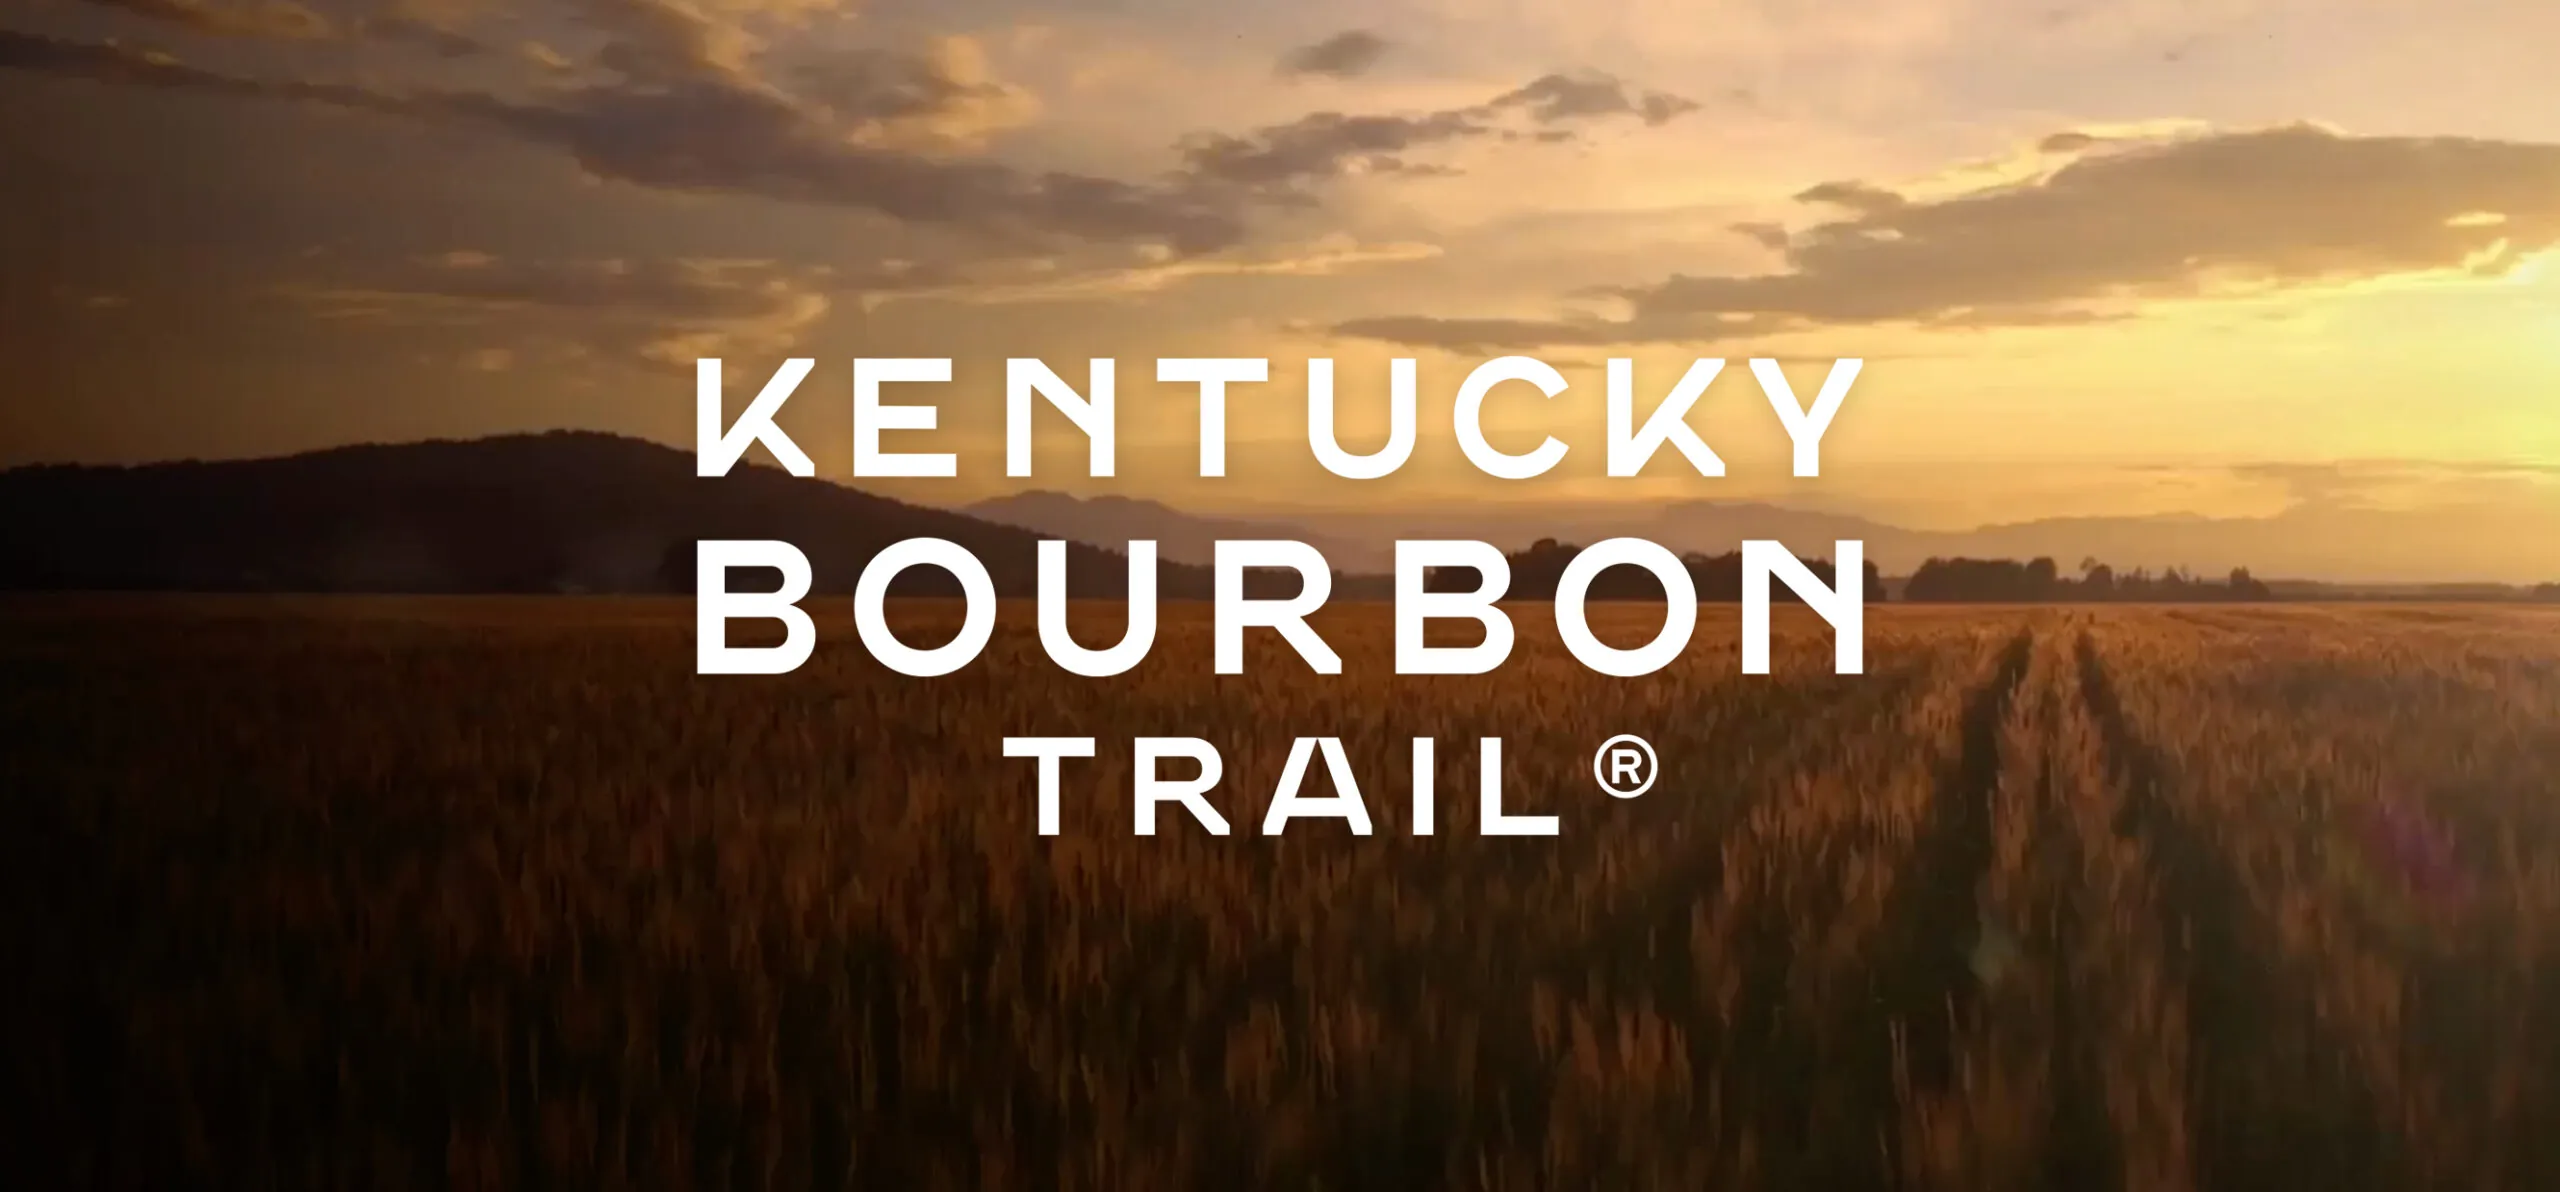 New Kentucky Bourbon Trail® logo